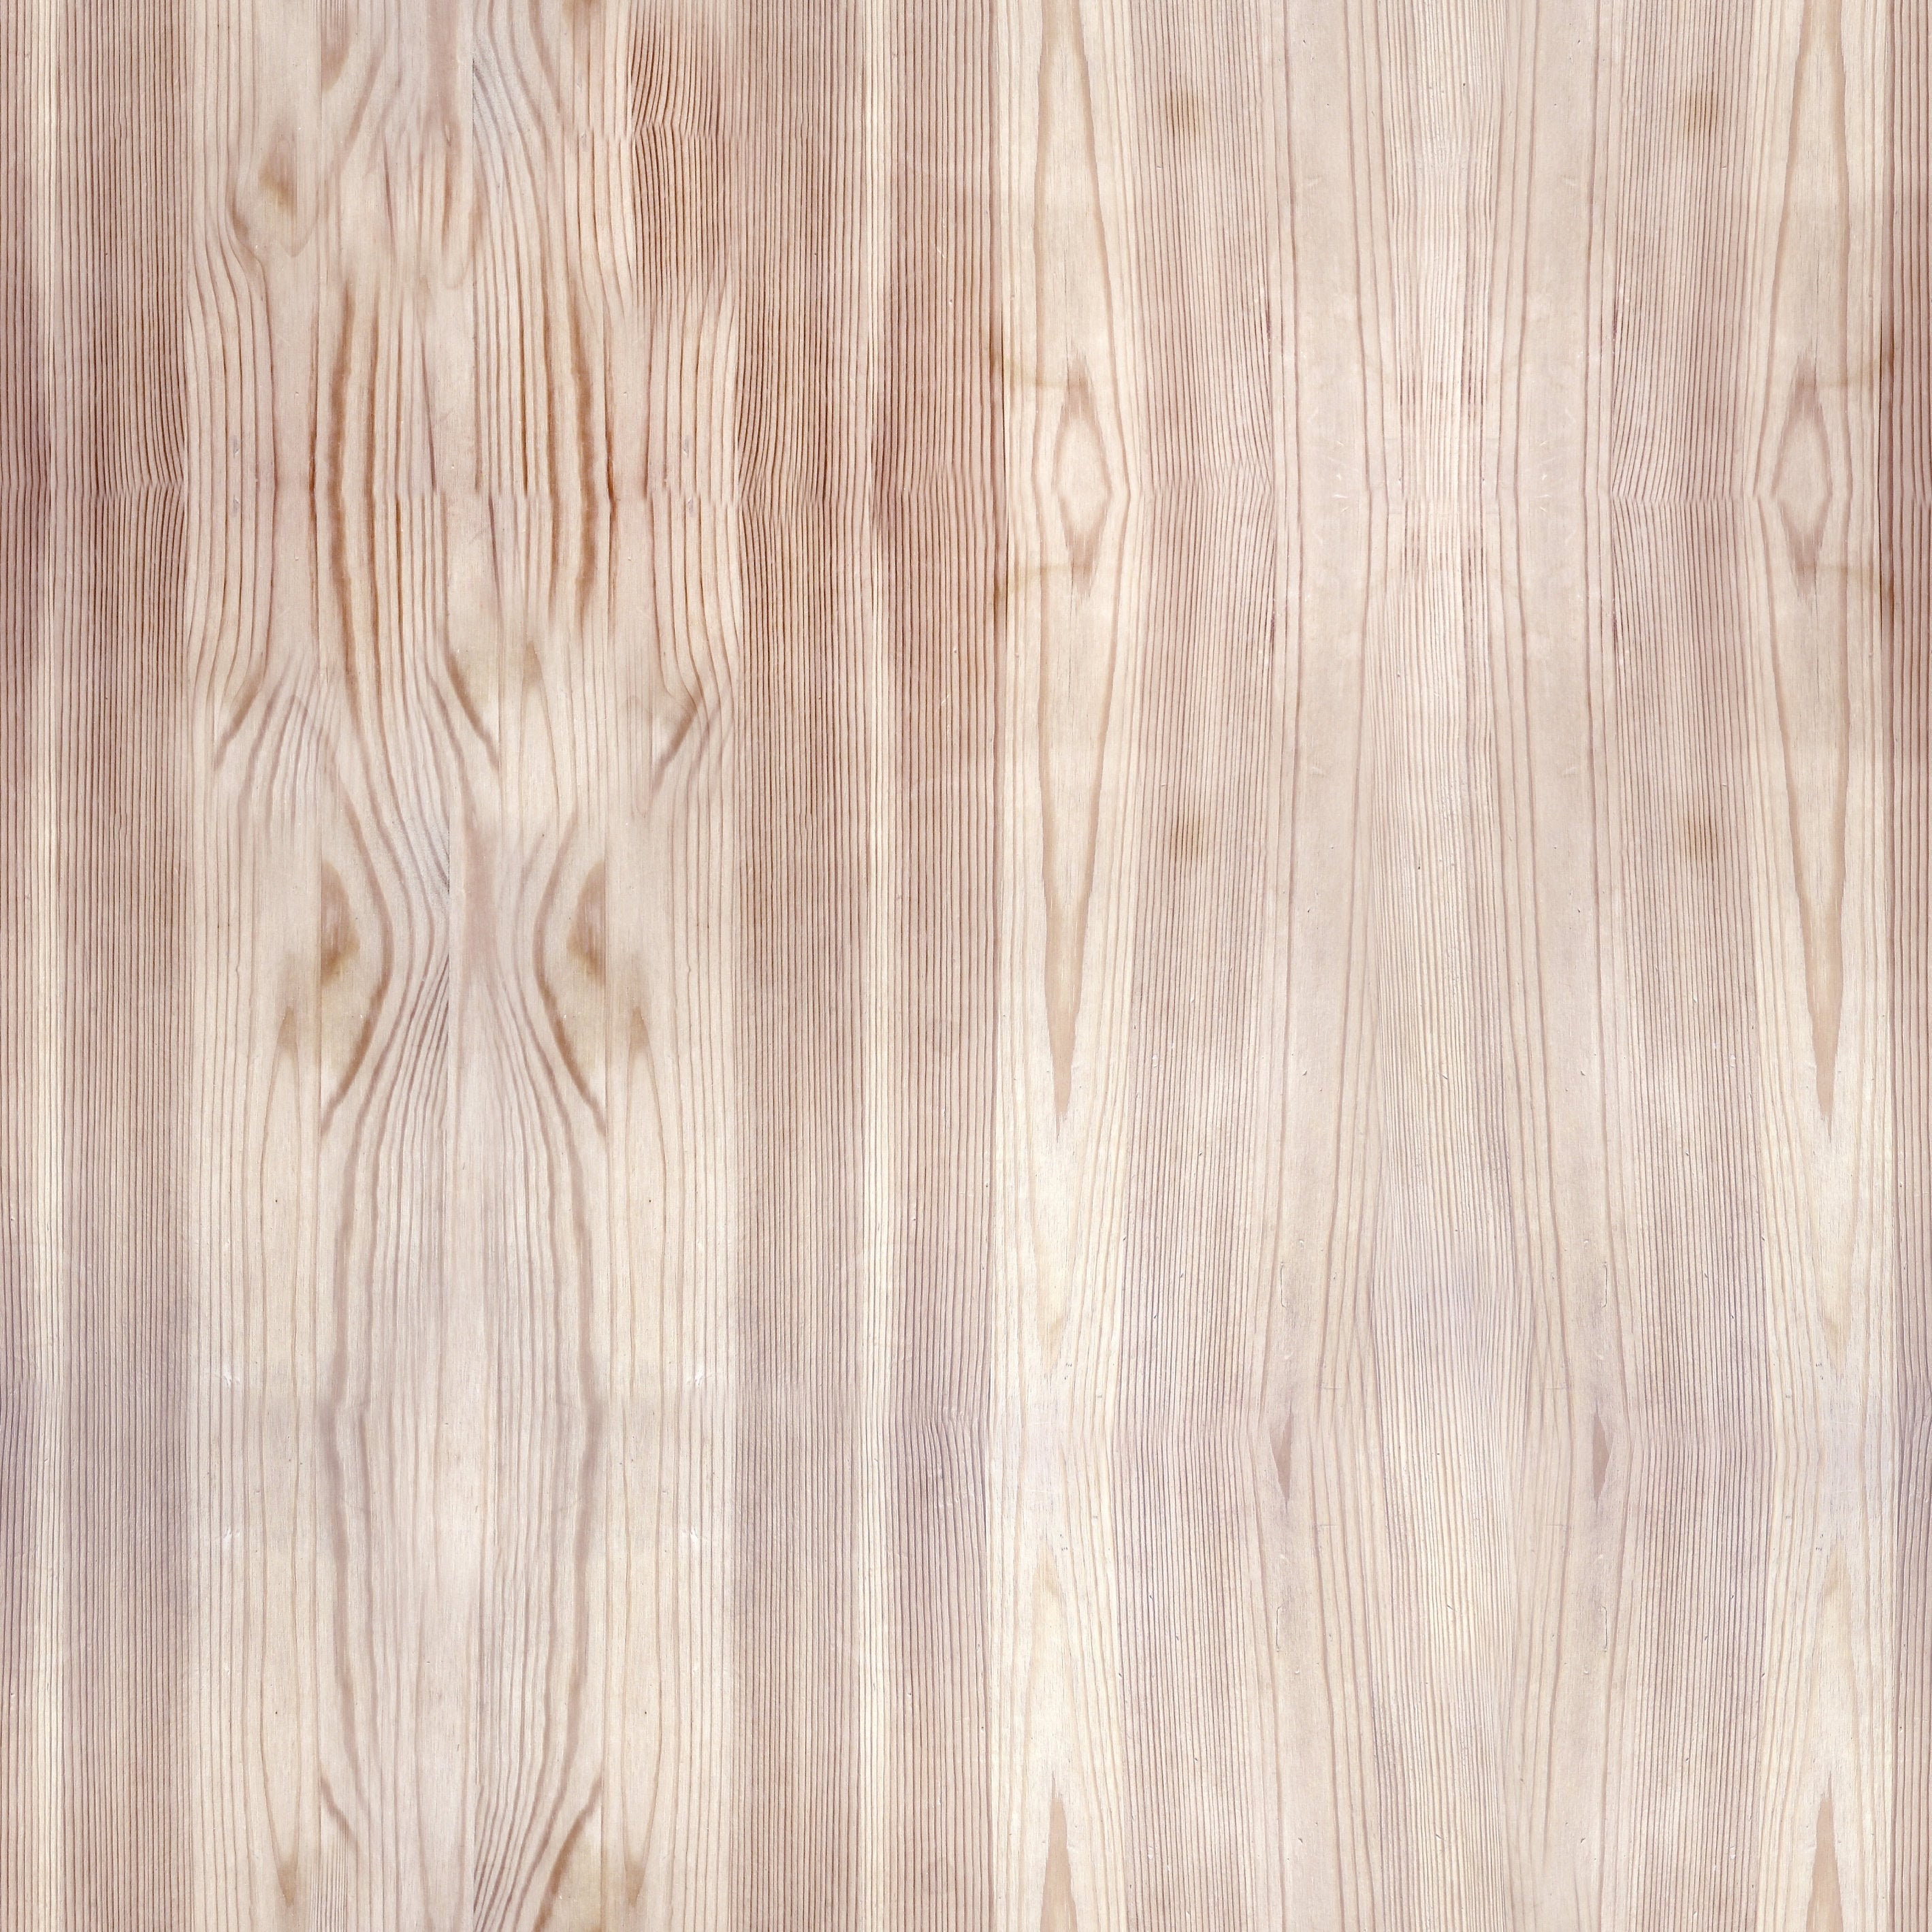 Oak Wood Wallpaper